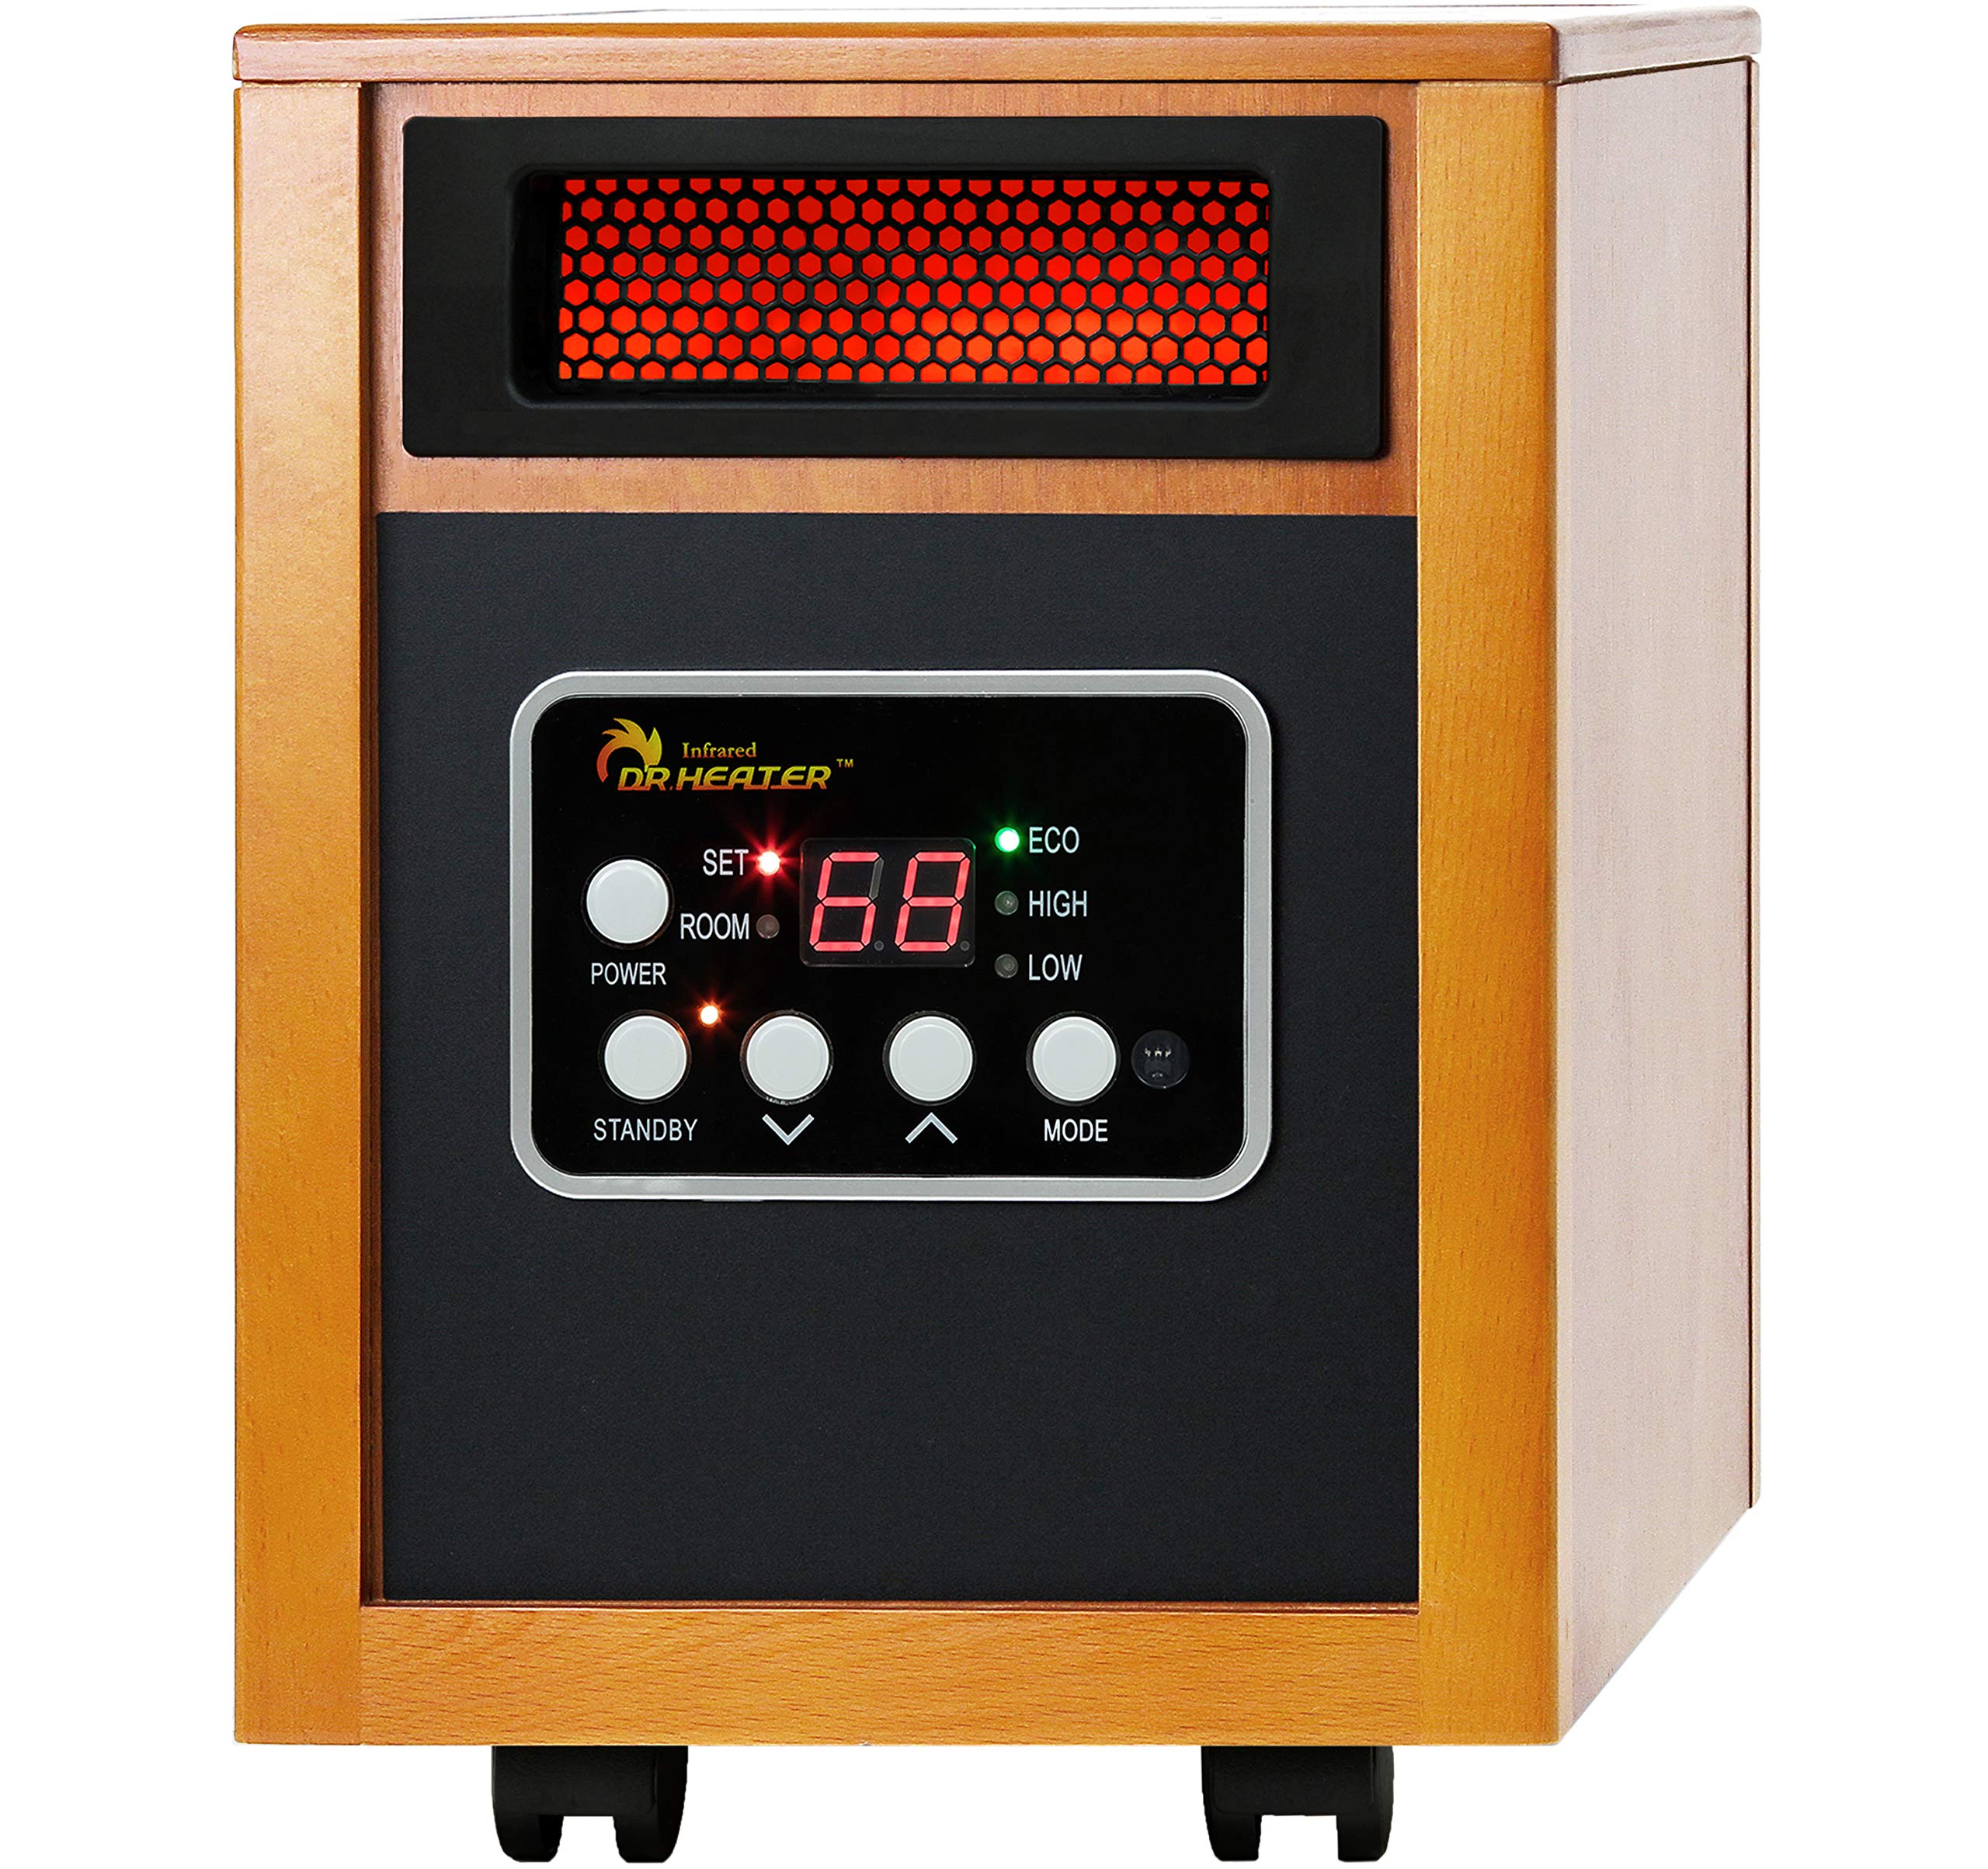 Dr Infrared Heater دفاية كهربائية محمولة 1500 وات